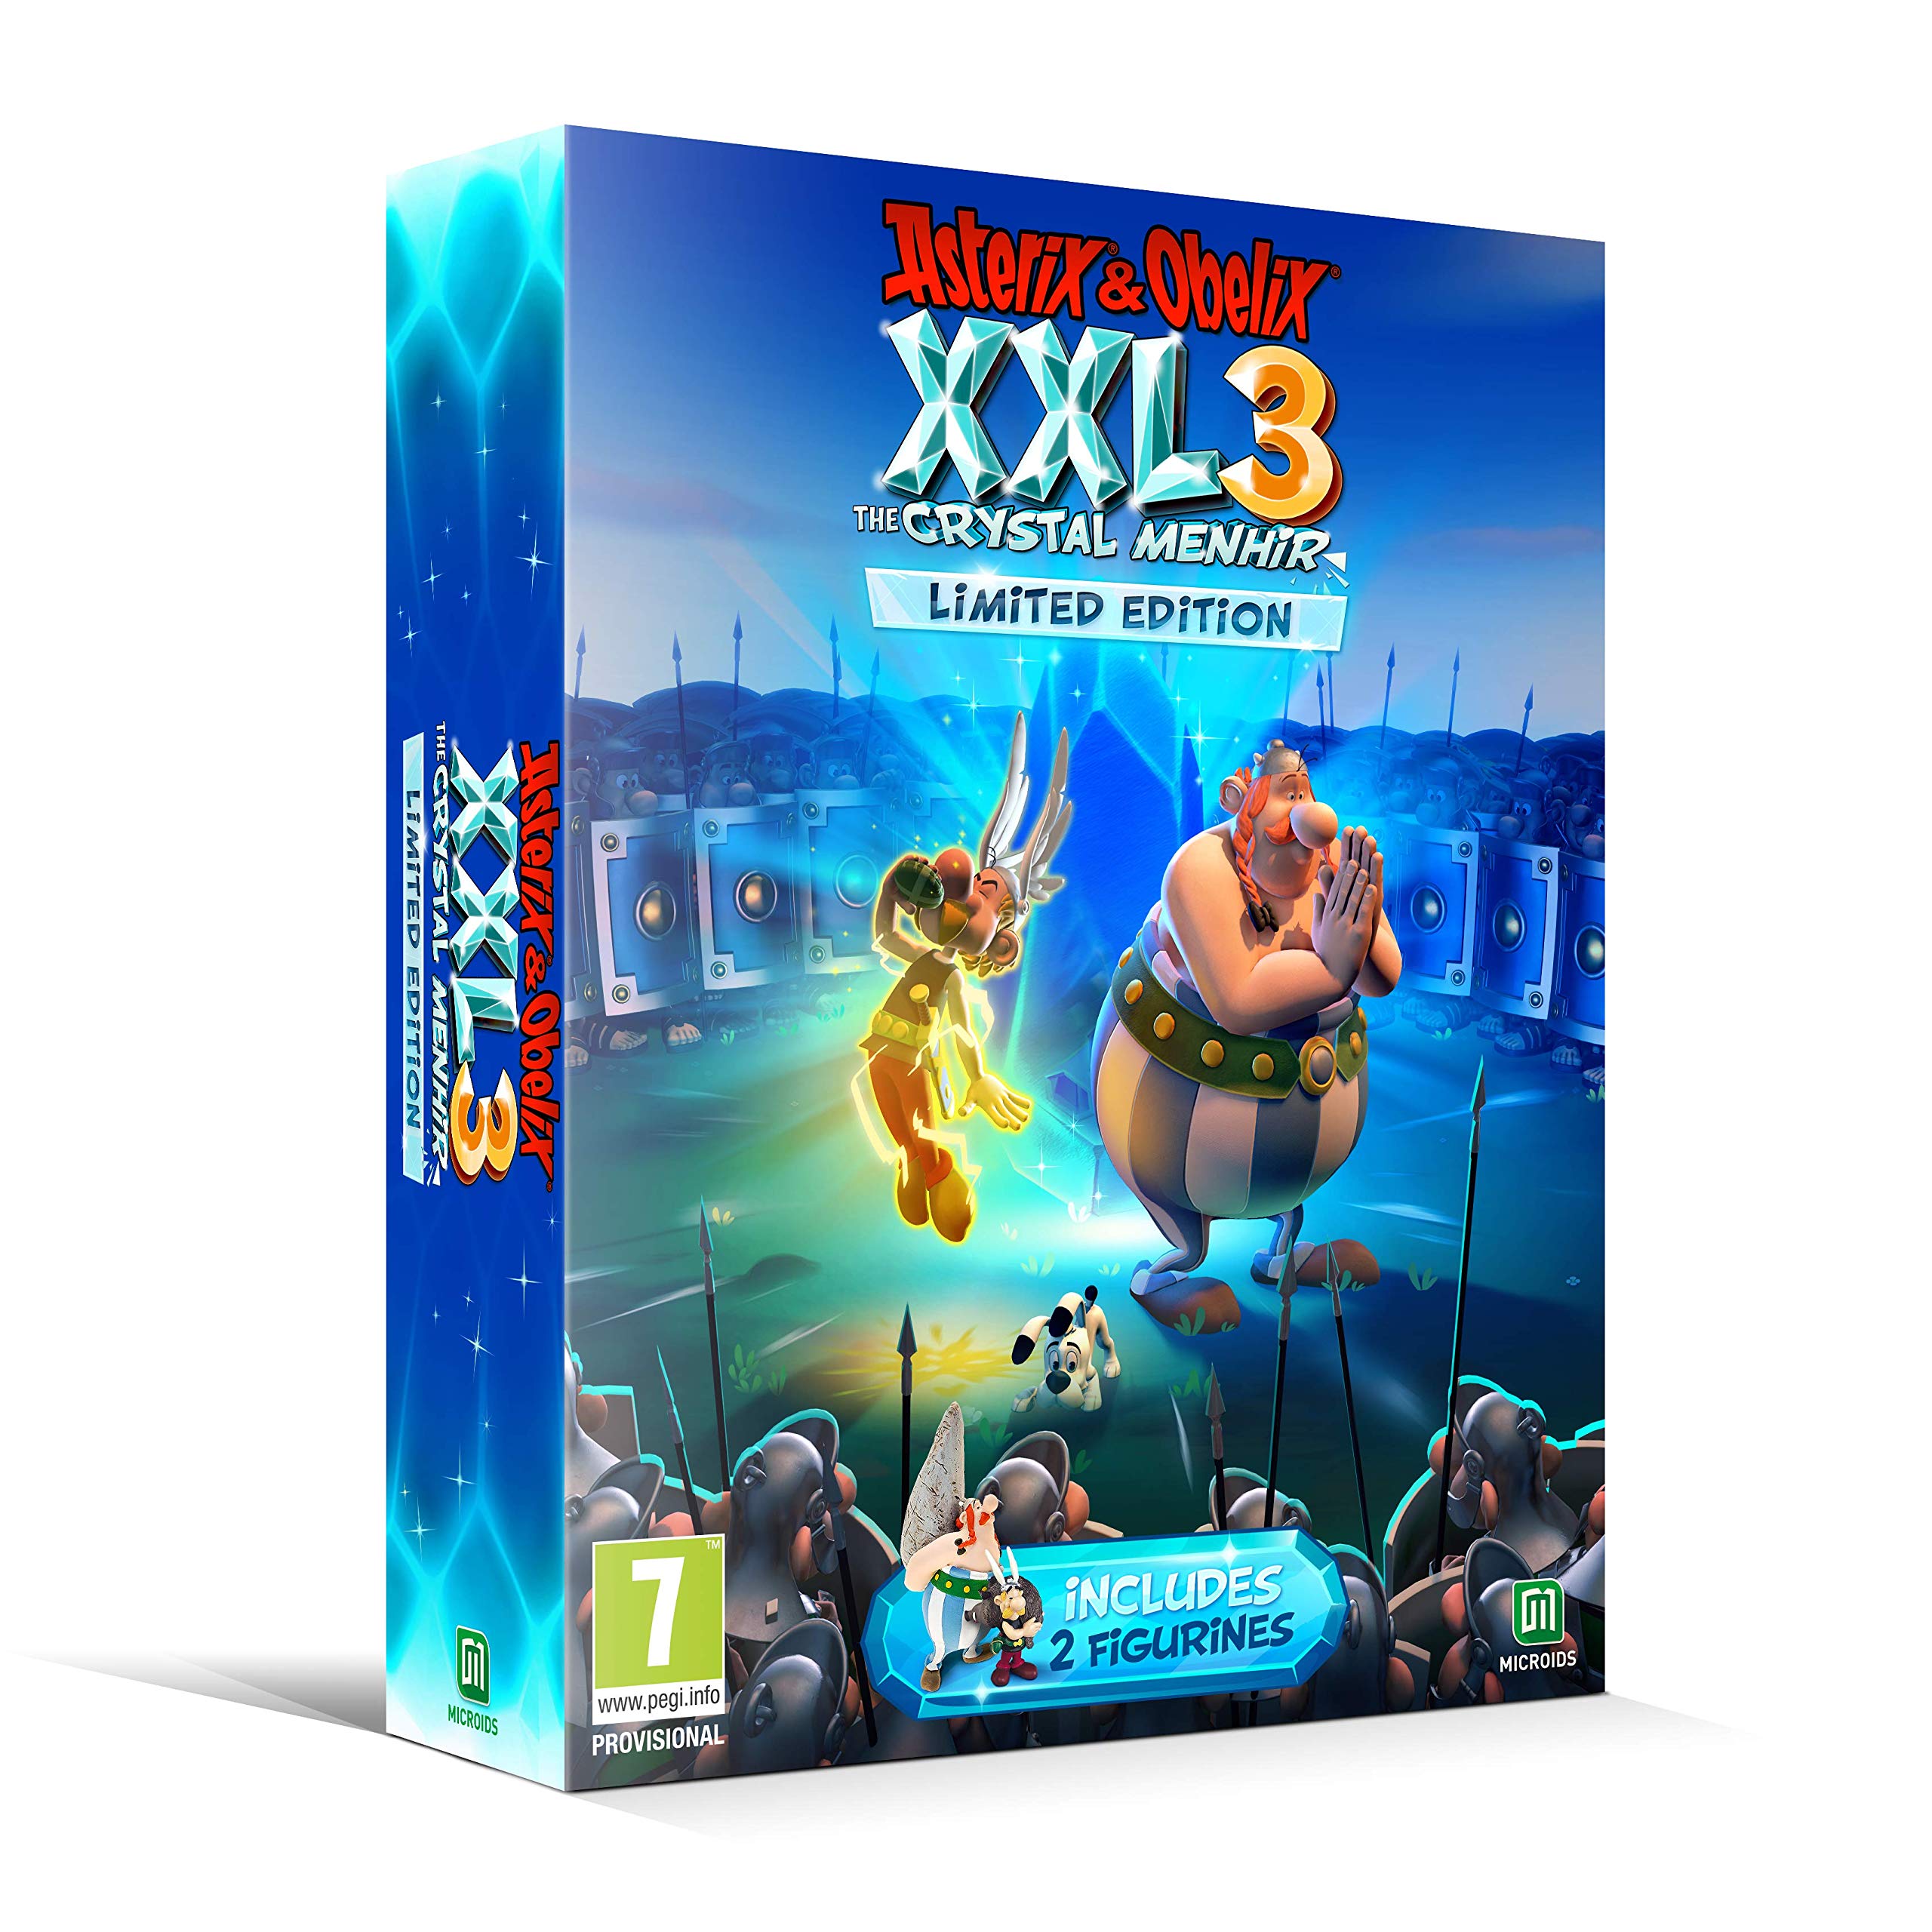 Asterix & Obelix XXL 3 The Crystal Menhir Limited Edition - PlayStation 4 Játékok